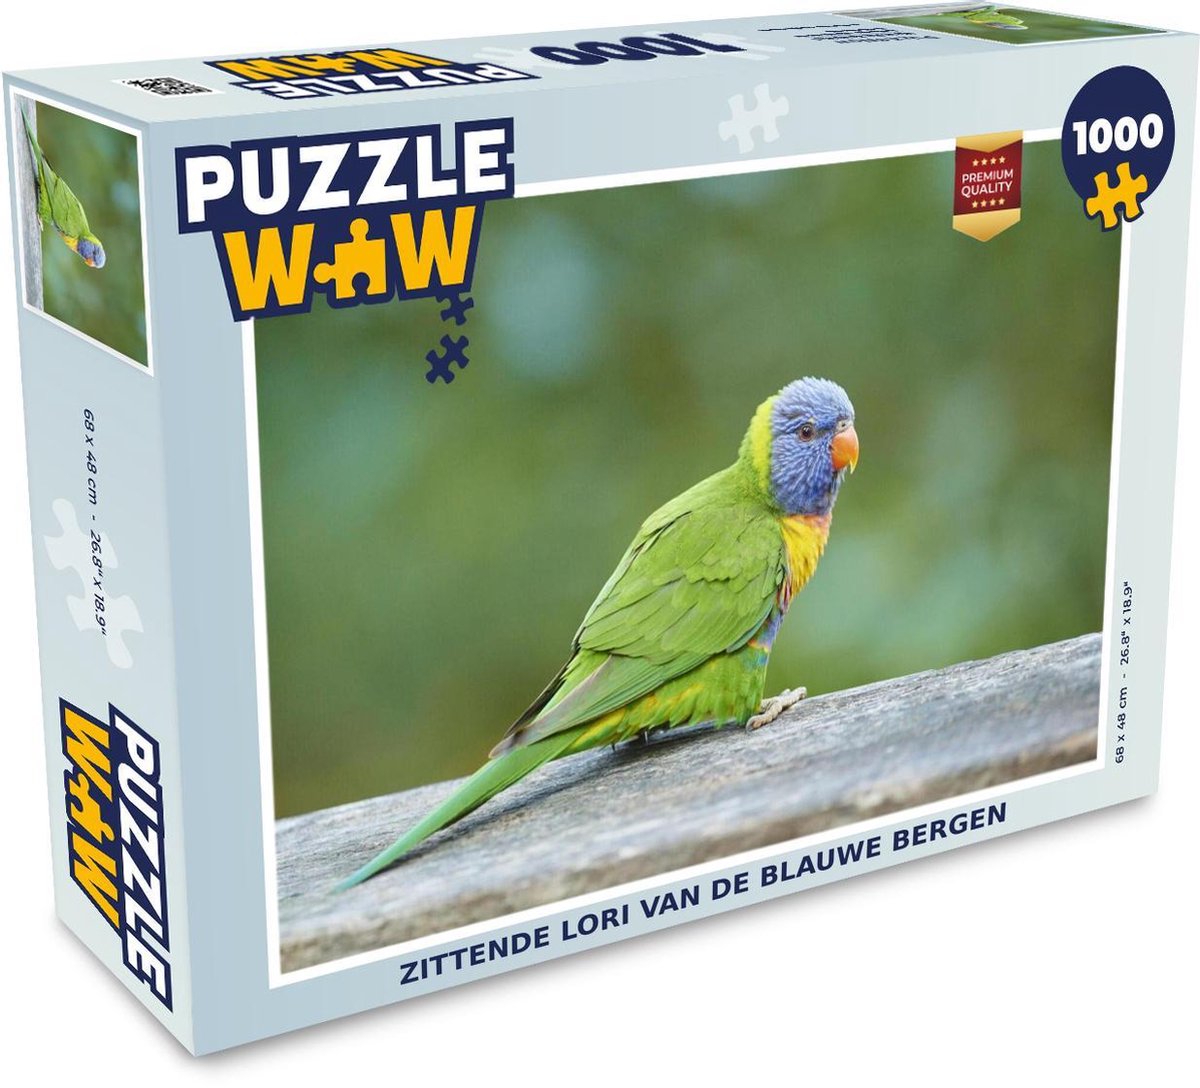 Afbeelding van product Puzzel 1000 stukjes volwassenen Lori van de blauwe bergen 1000 stukjes - Zittende Lori van de blauwe bergen - PuzzleWow heeft +100000 puzzels